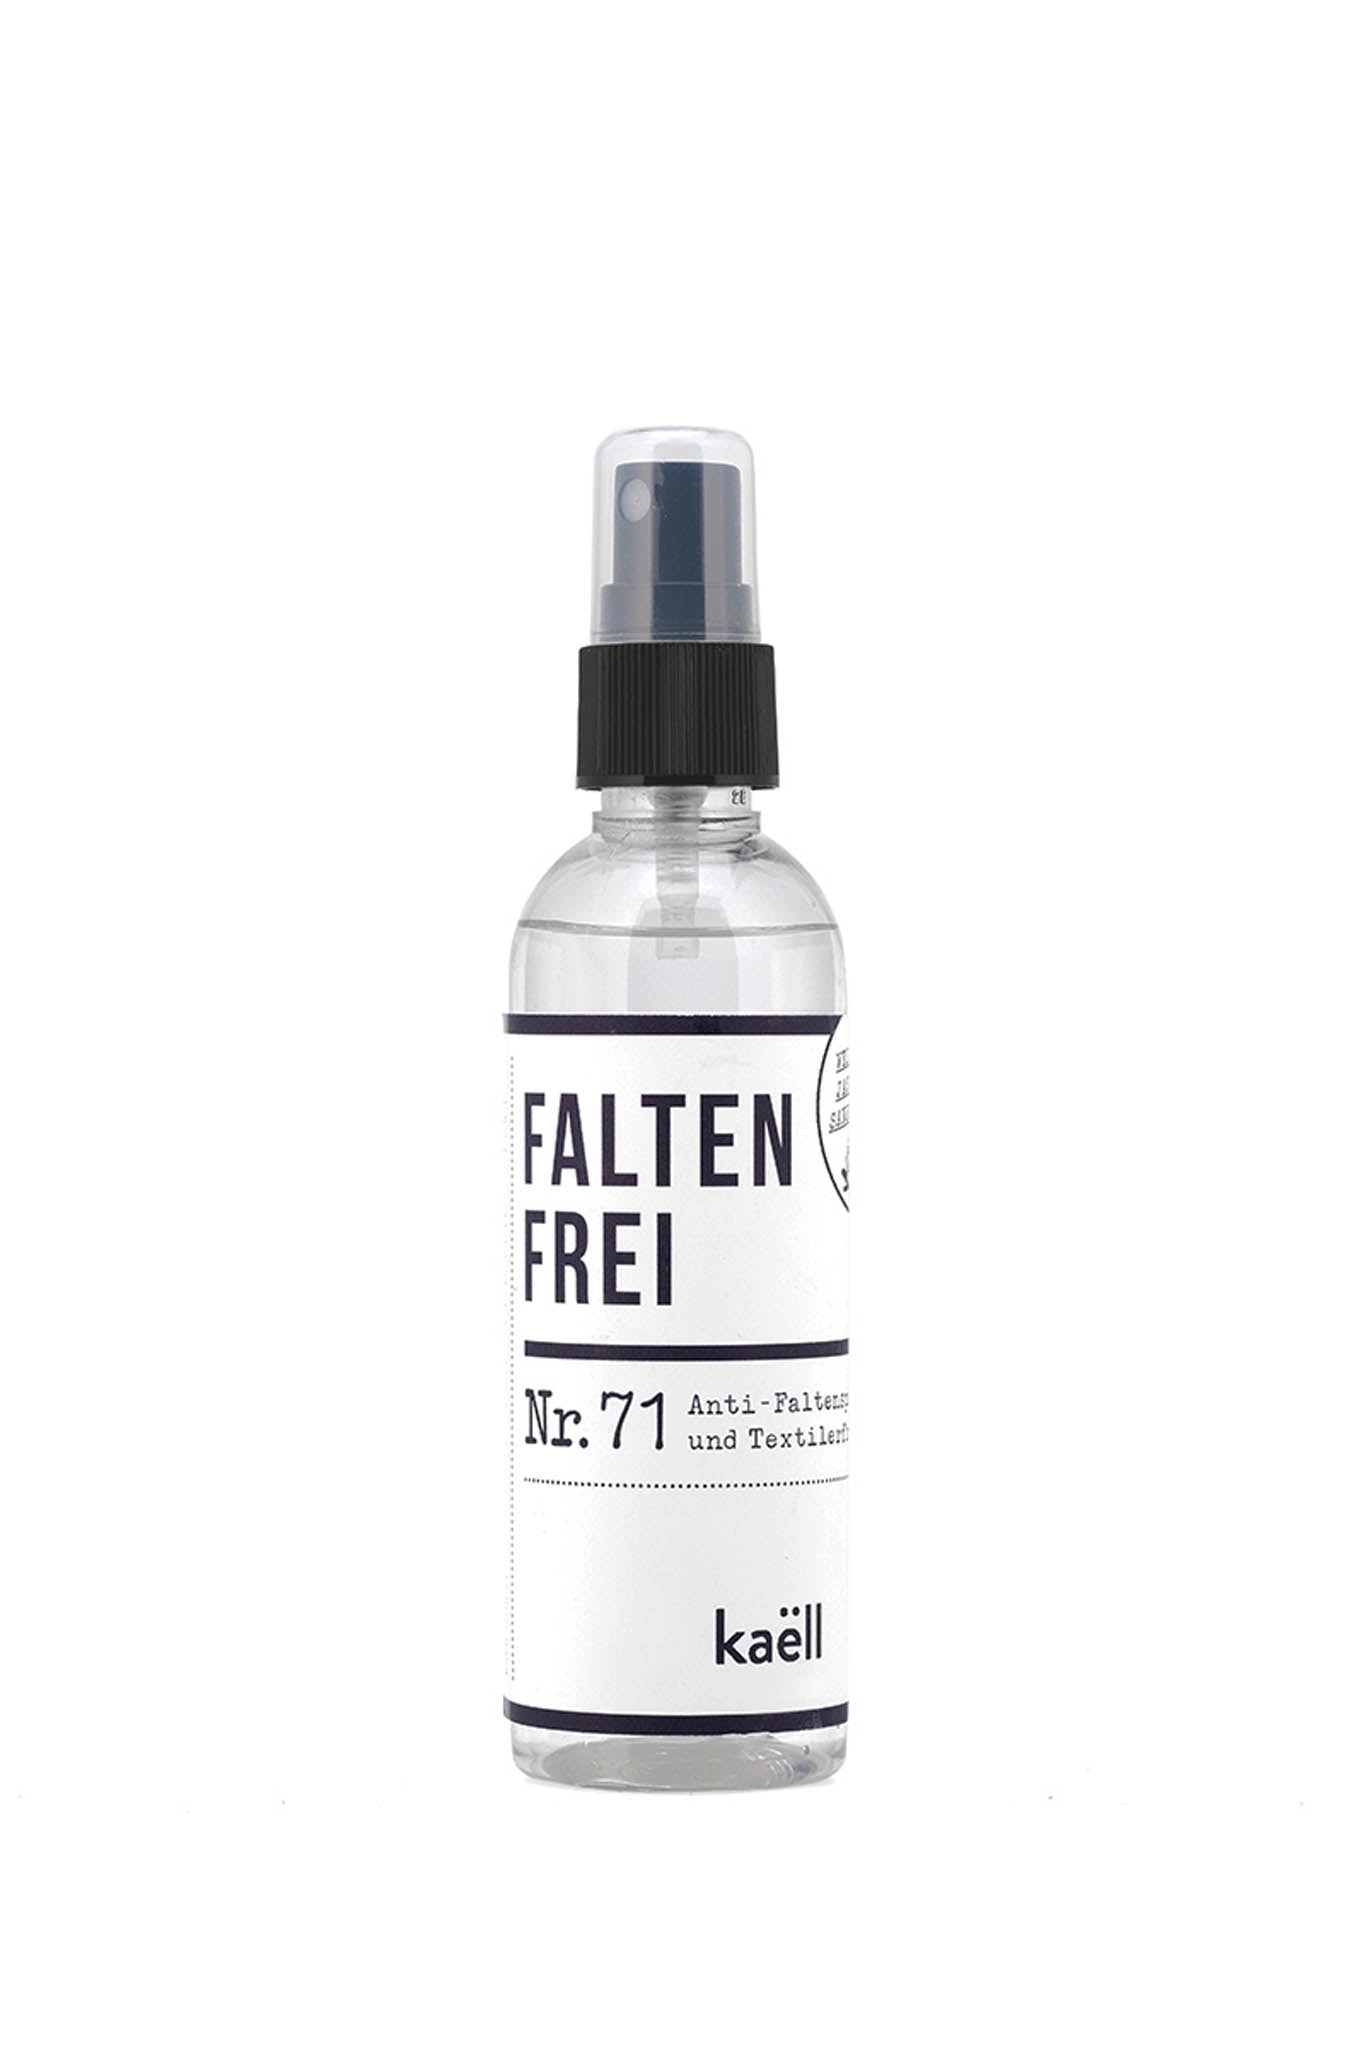 kaëll - Anti-Faltenspray und Textilerfrischer "Faltenfrei" - Leja Concept Store